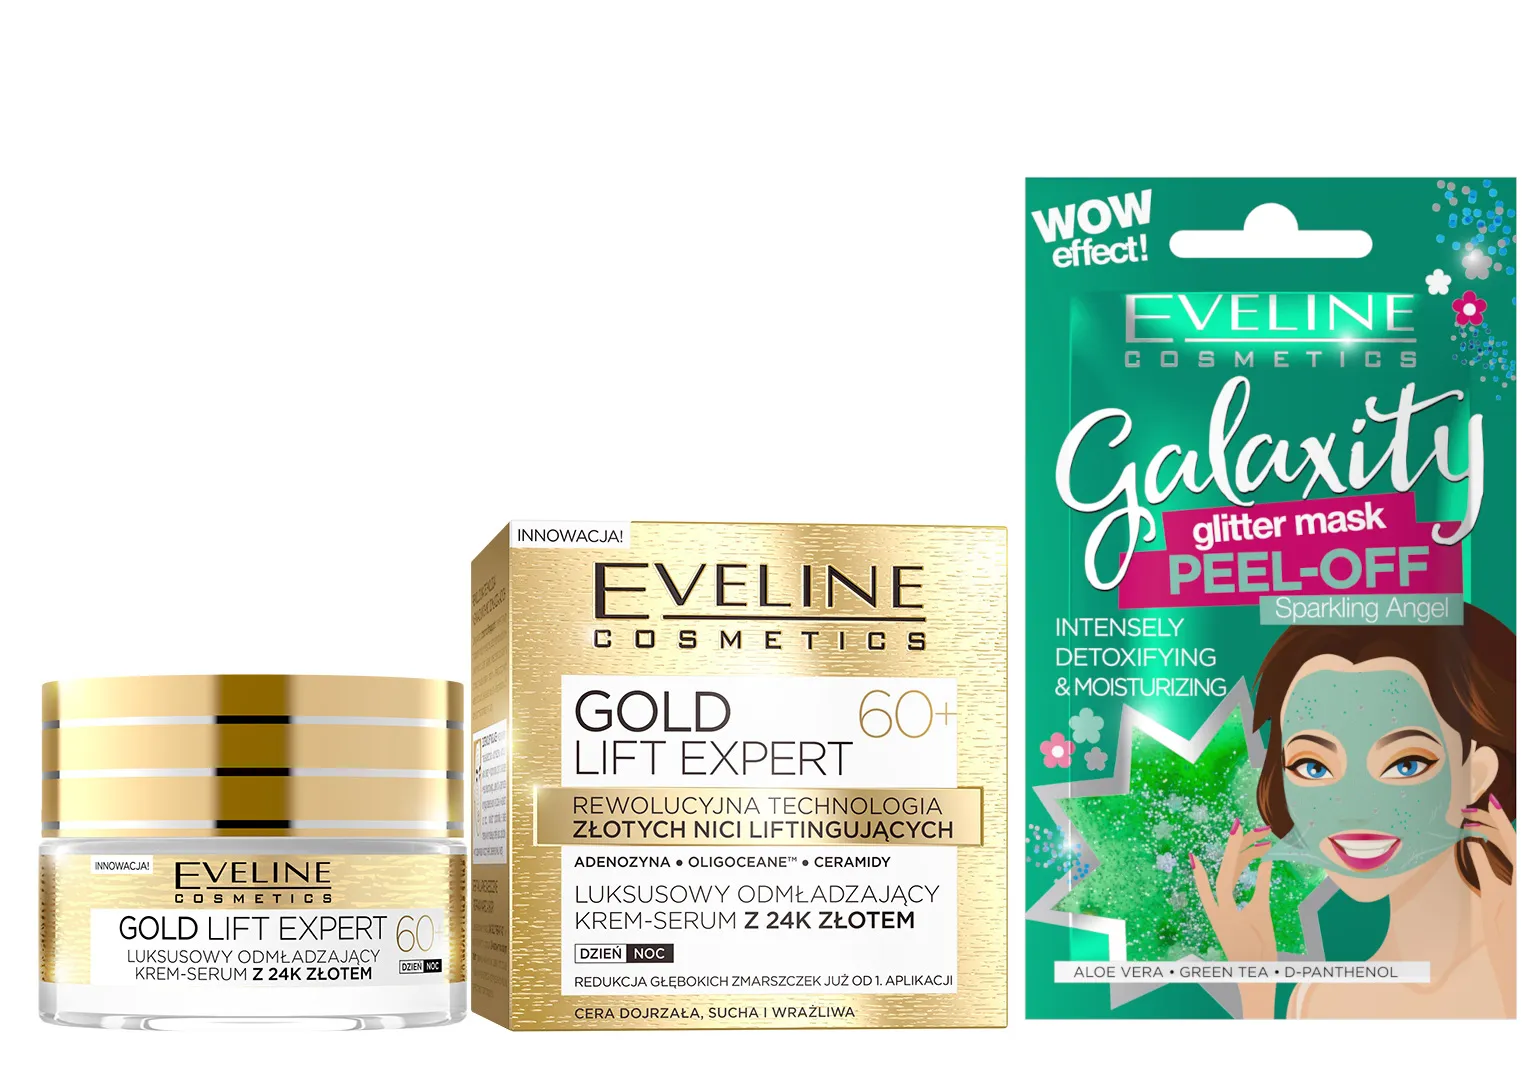 Eveline Cosmetics Gold Lift Expert Luksusowy odmładzający krem- serum 24k złotem, na dzień i na noc 60+, 50 ml + Eveline Cosmetics Detoksykująco-nawilżająca maseczka peel-off z połyskującymi drobinkami, 10 ml